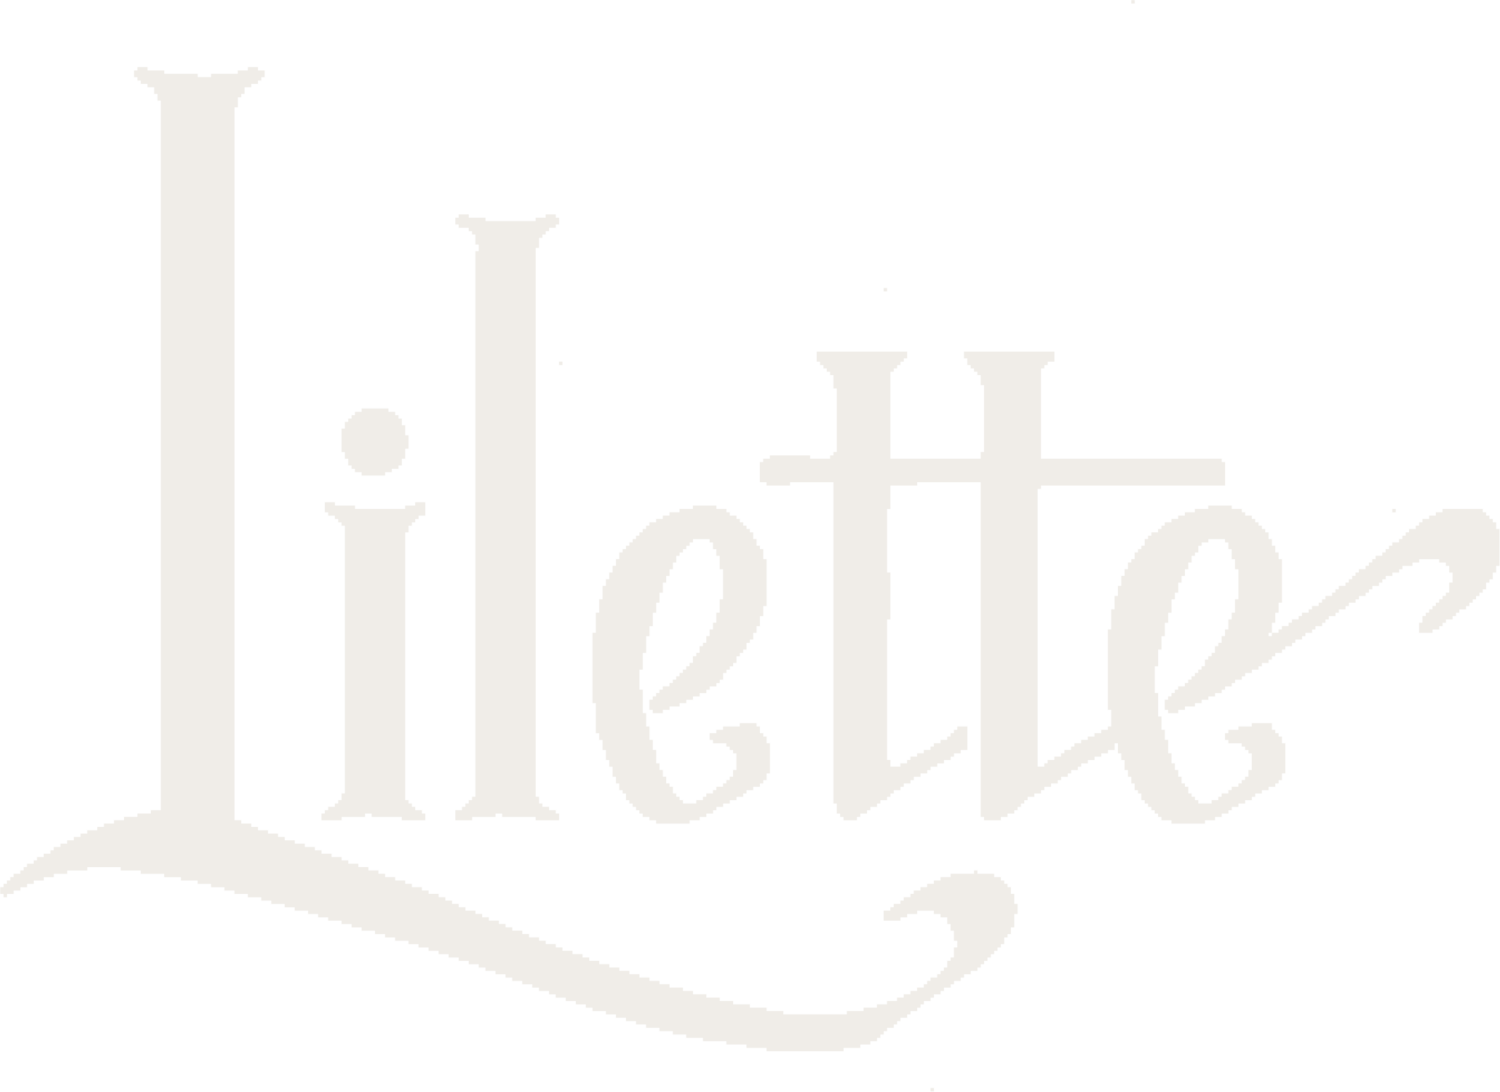 Lilette